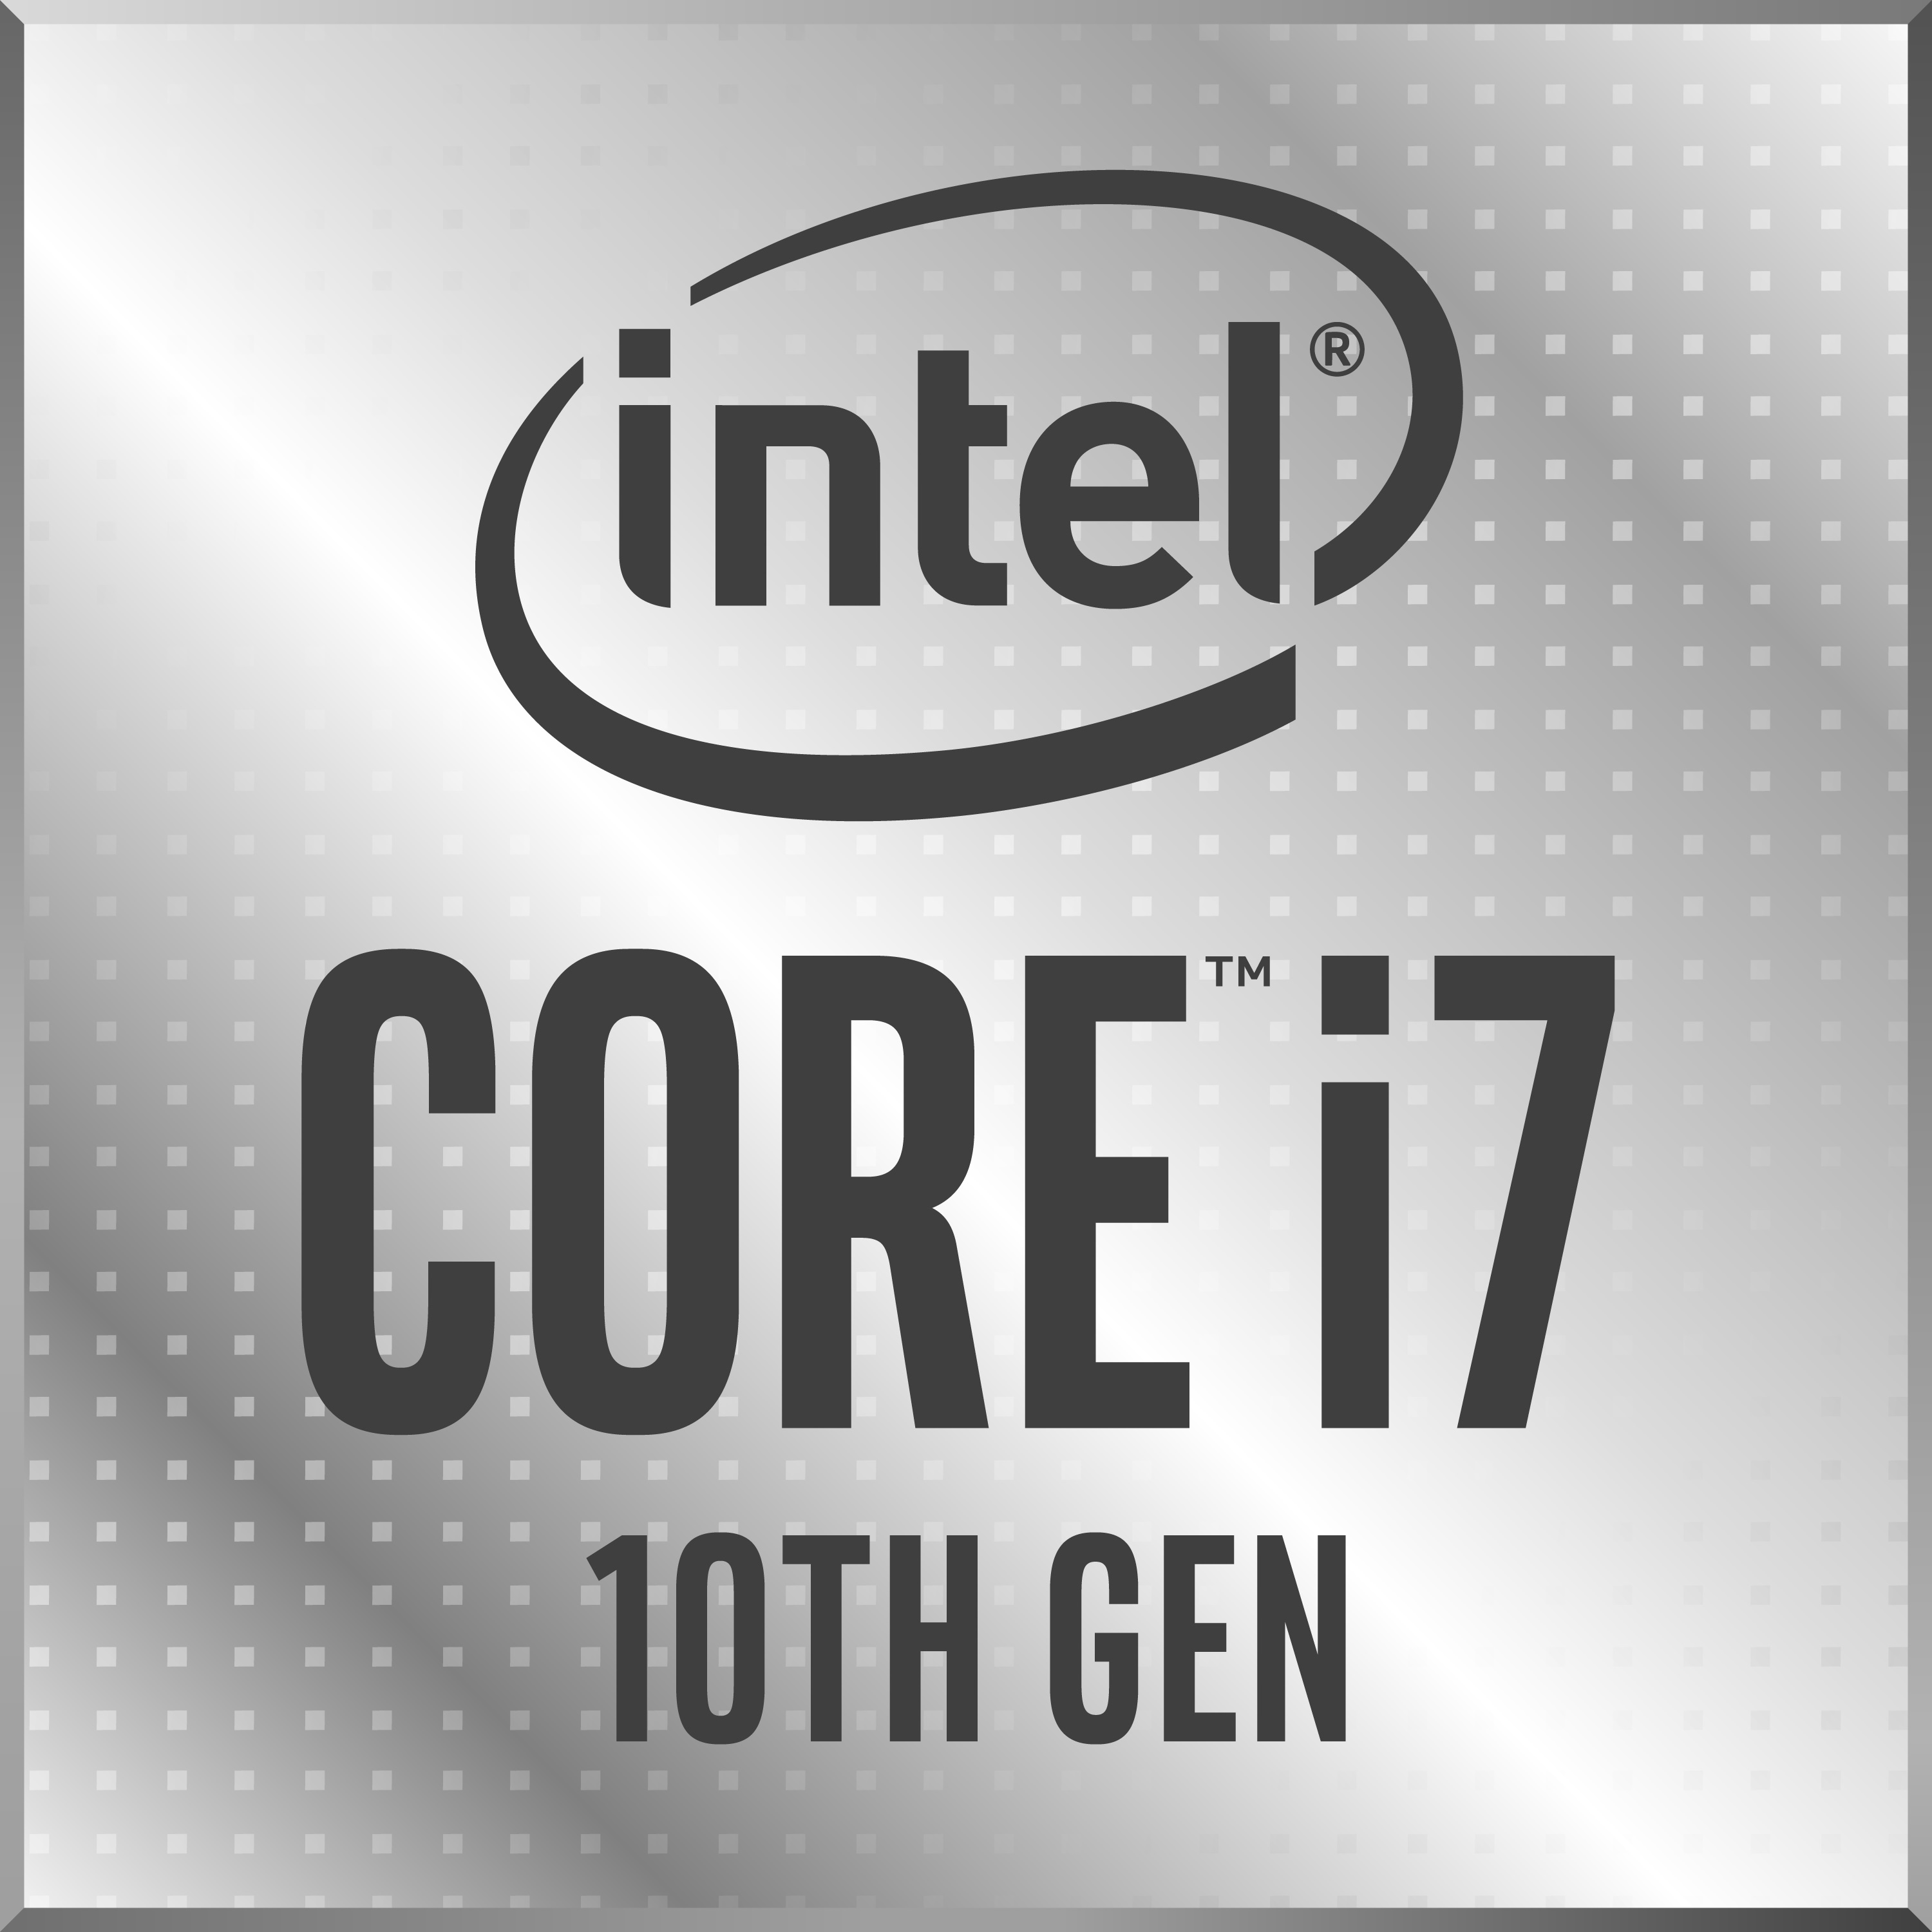 Tweede leerjaar bedreiging rand Intel Core i7-10750H Processor - Benchmarks and Specs - NotebookCheck.net  Tech